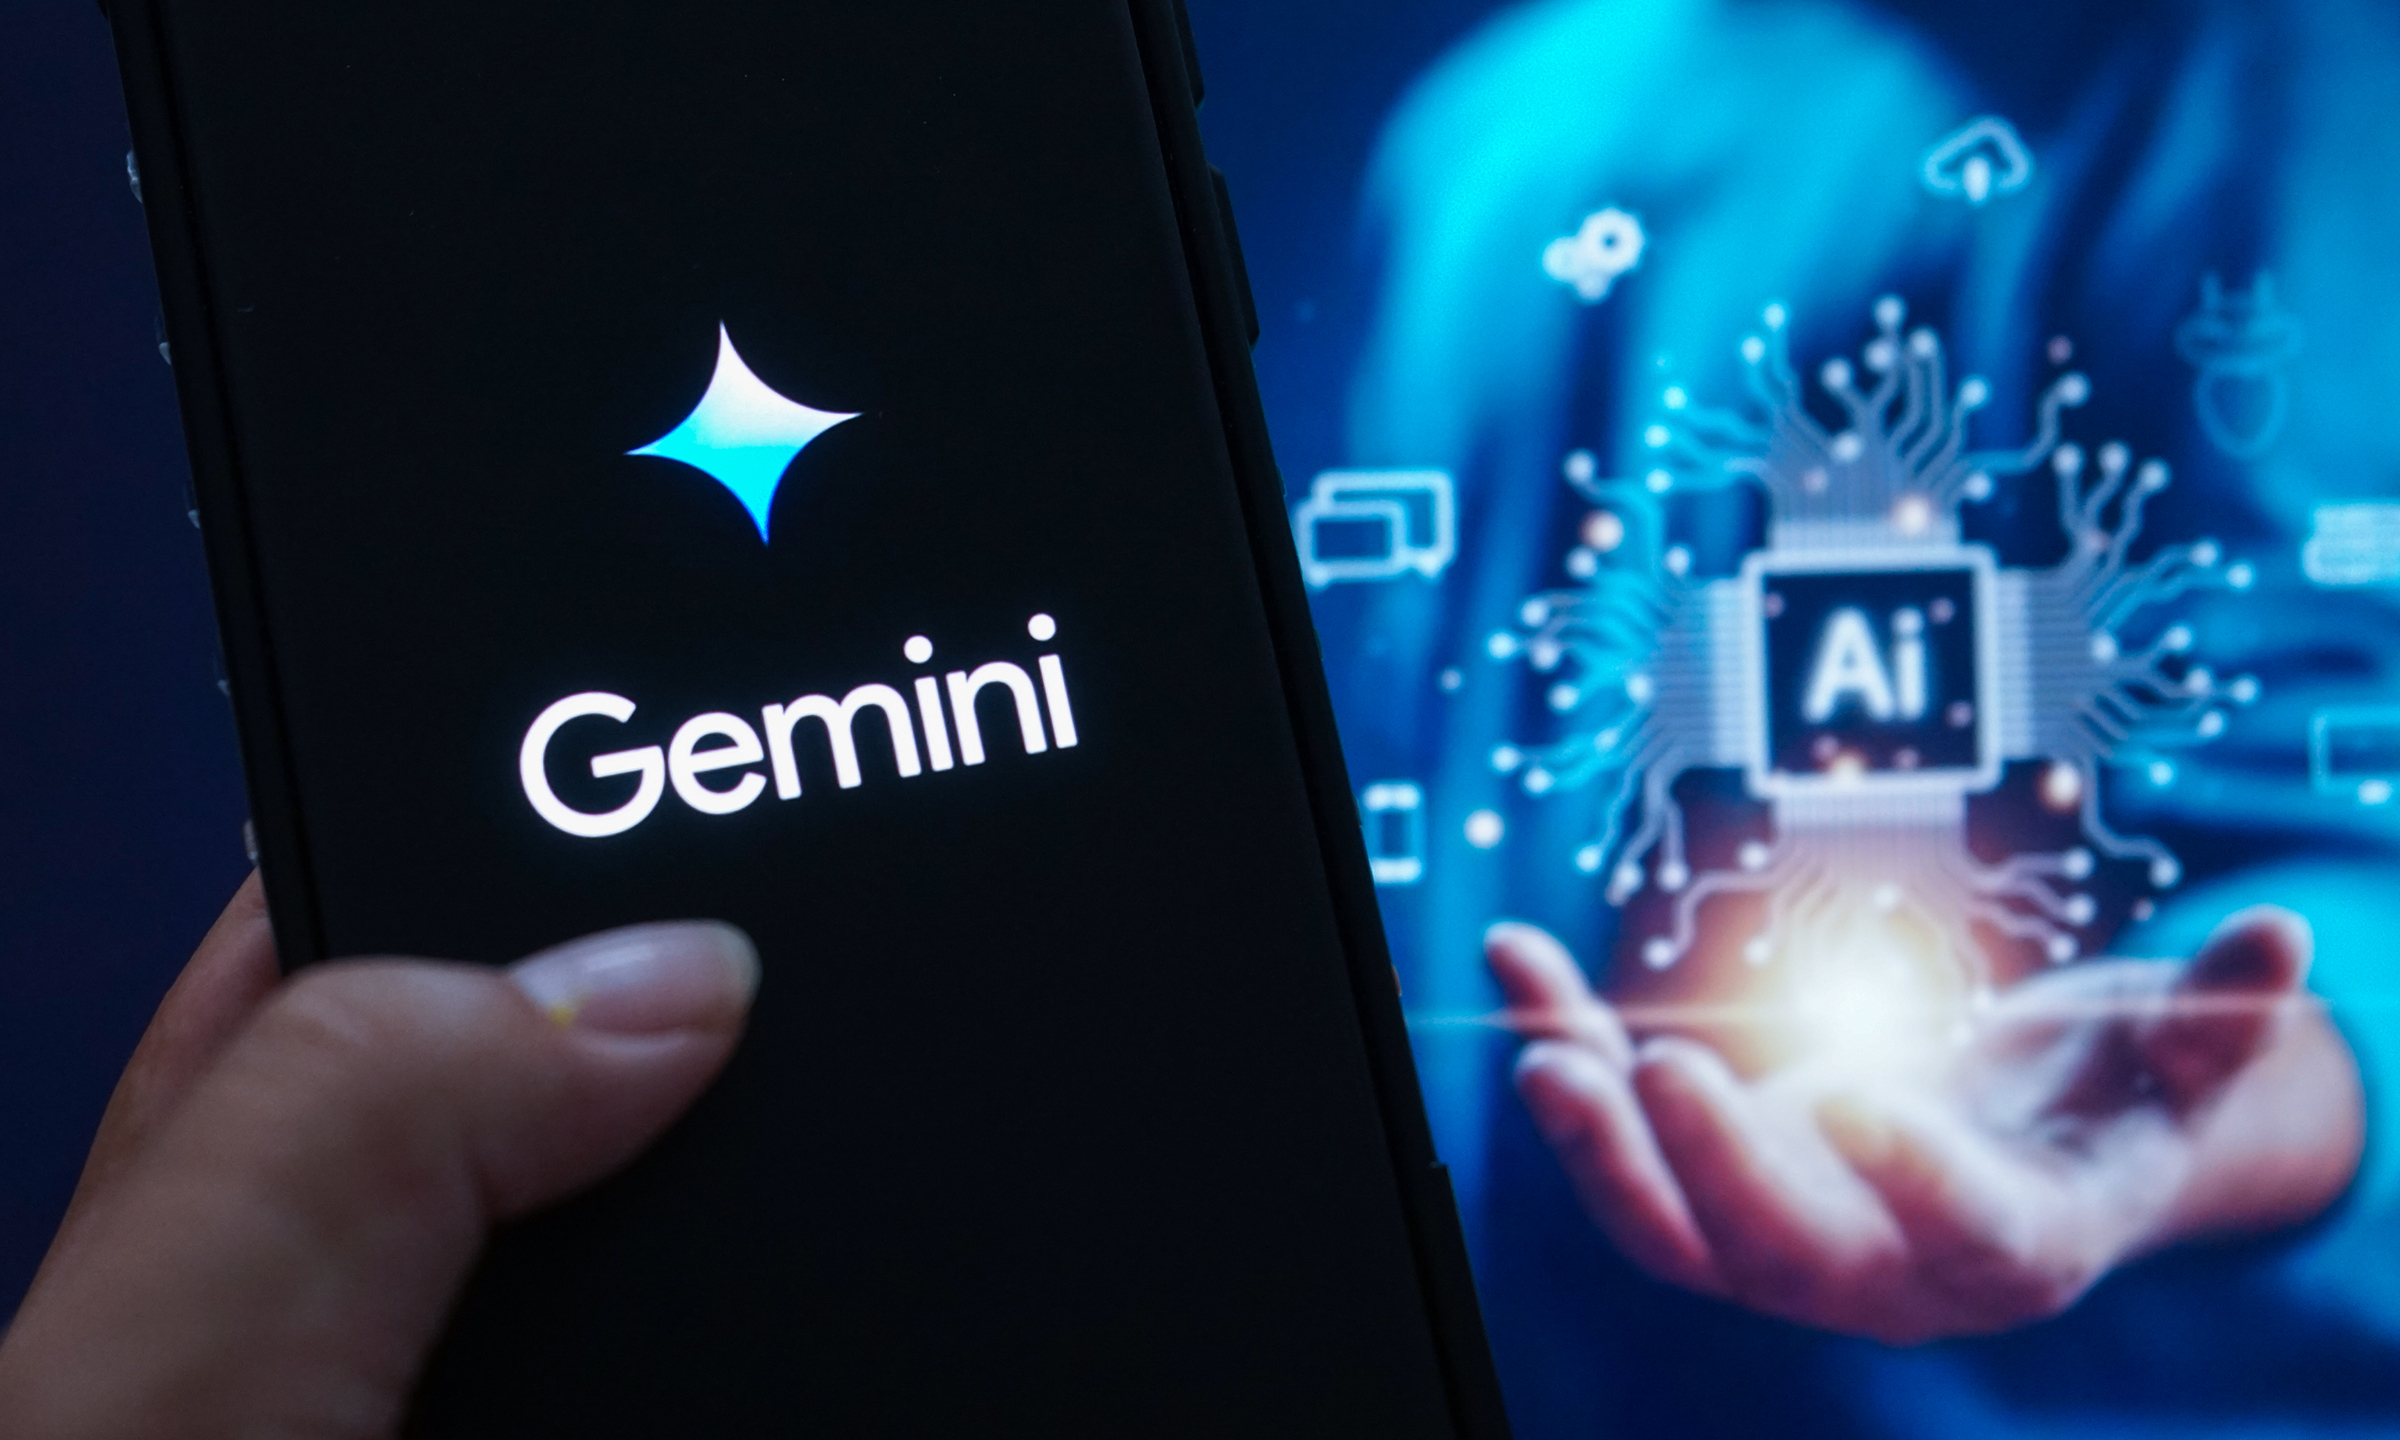 Logo Google Gemini hiển thị trên một chiếc smartphone. Ảnh: Bảo Lâm